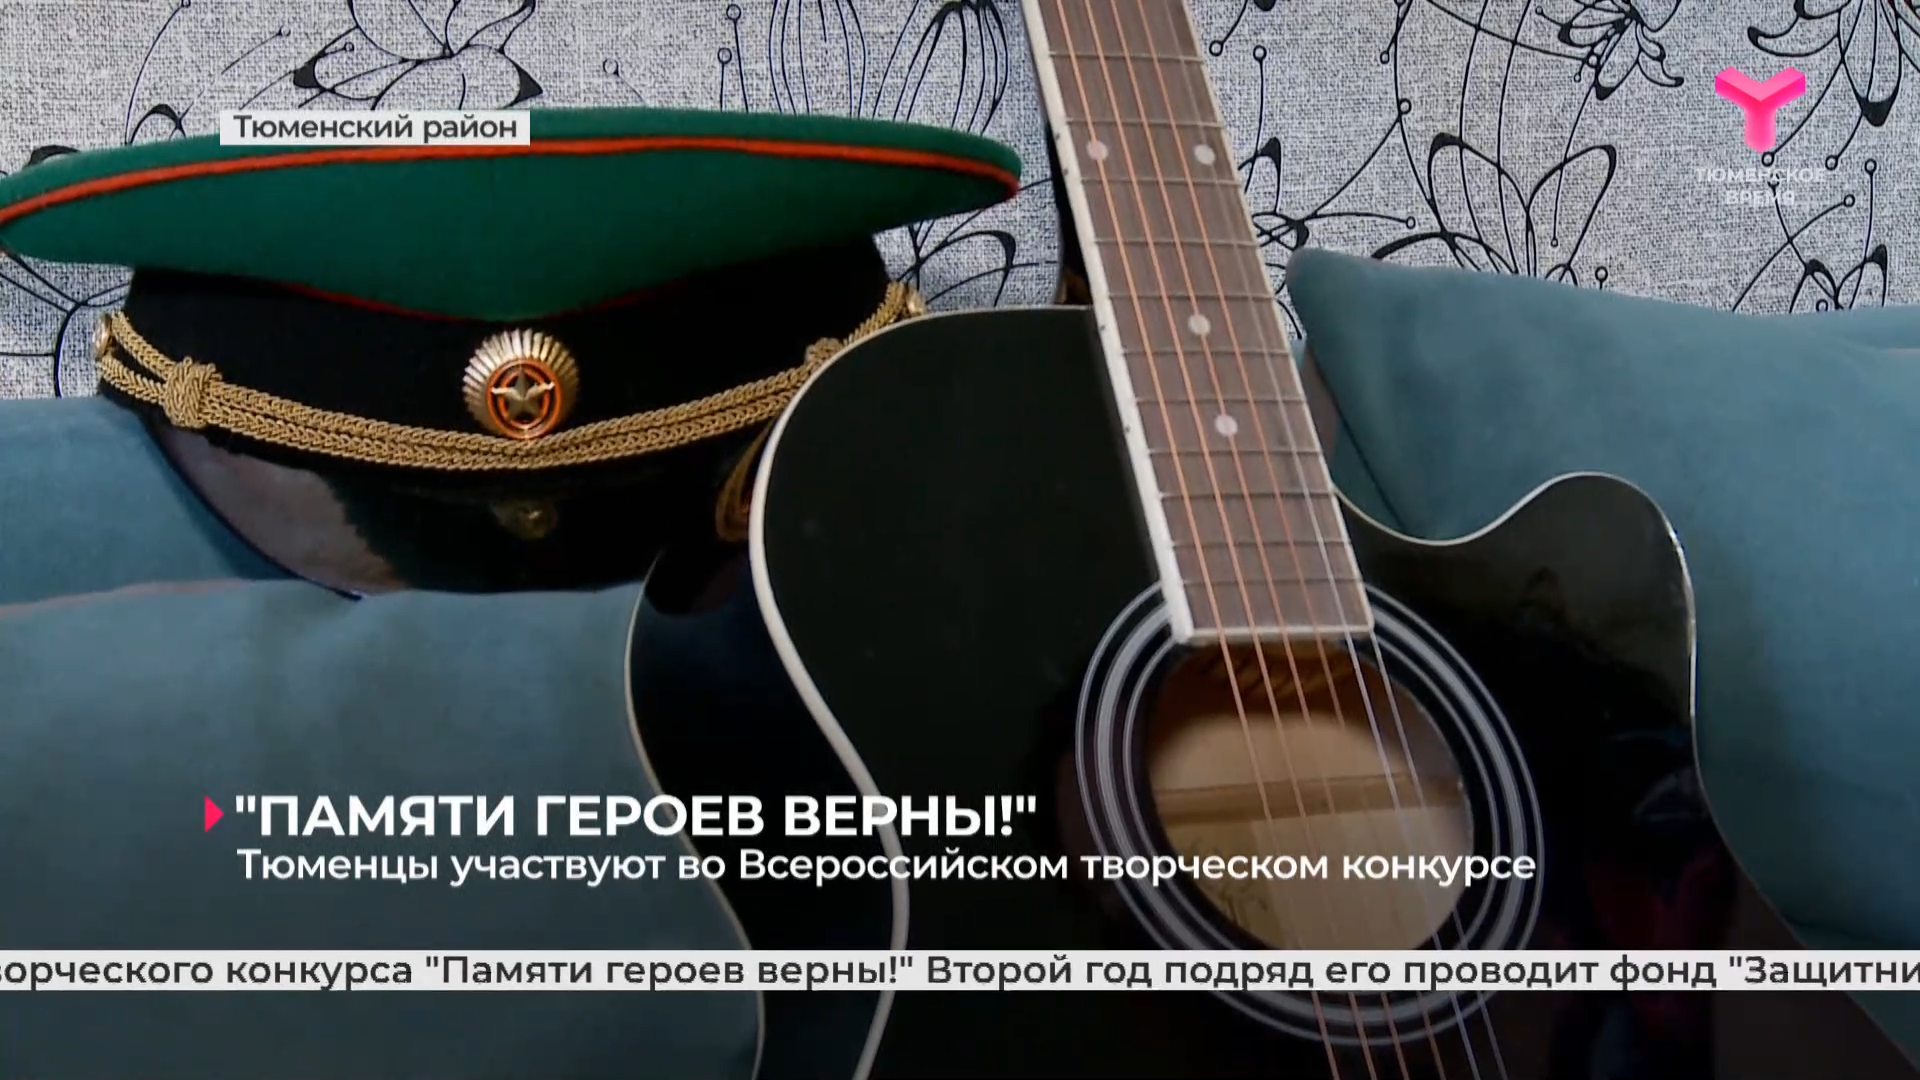 Тюменцы участвуют во Всероссийском творческом конкурсе